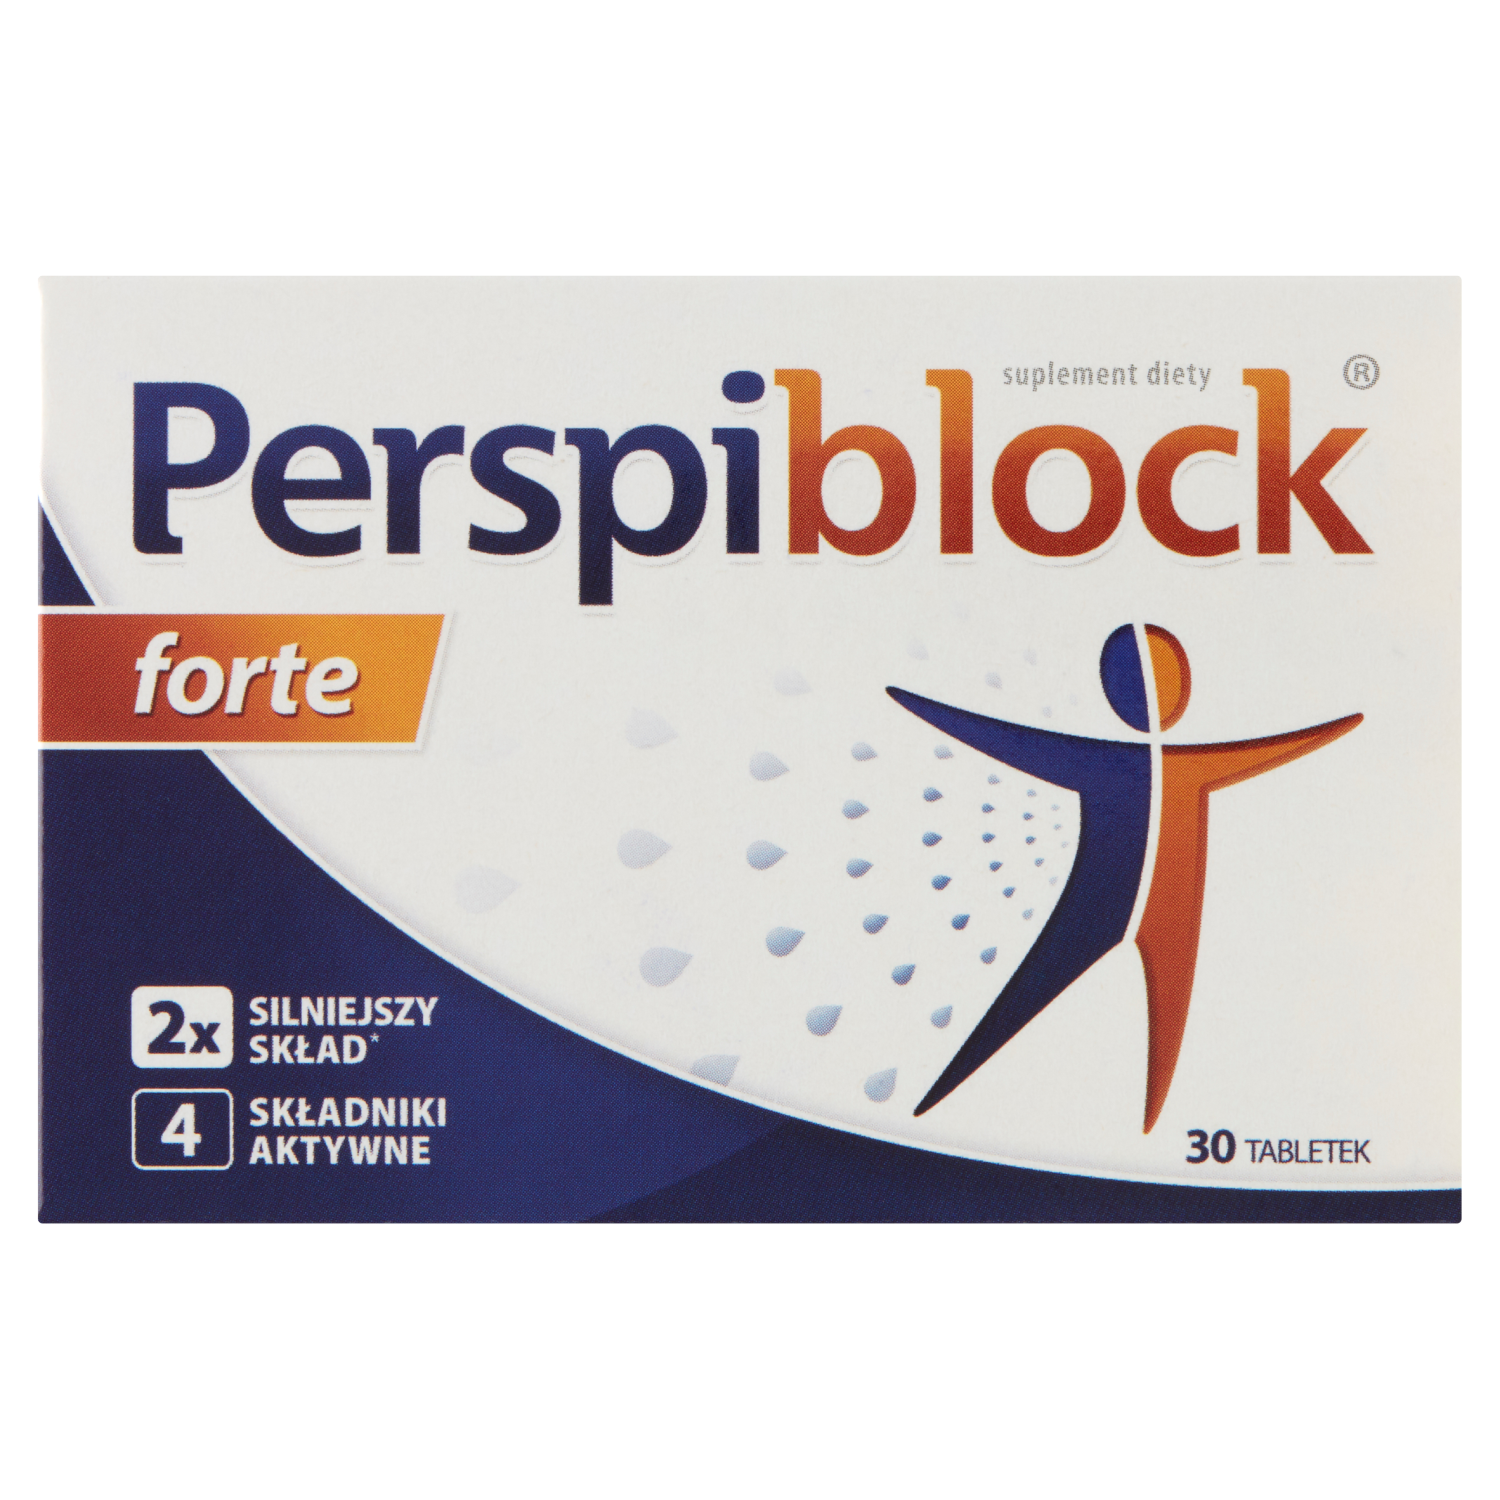 Perspiblock Forte биологически активная добавка, 30 таблеток/1 упаковка биологически активная добавка vitamin c forte real pharm 90 таблеток антиоксидант для иммунитета кожи лица для мужчин и женщин